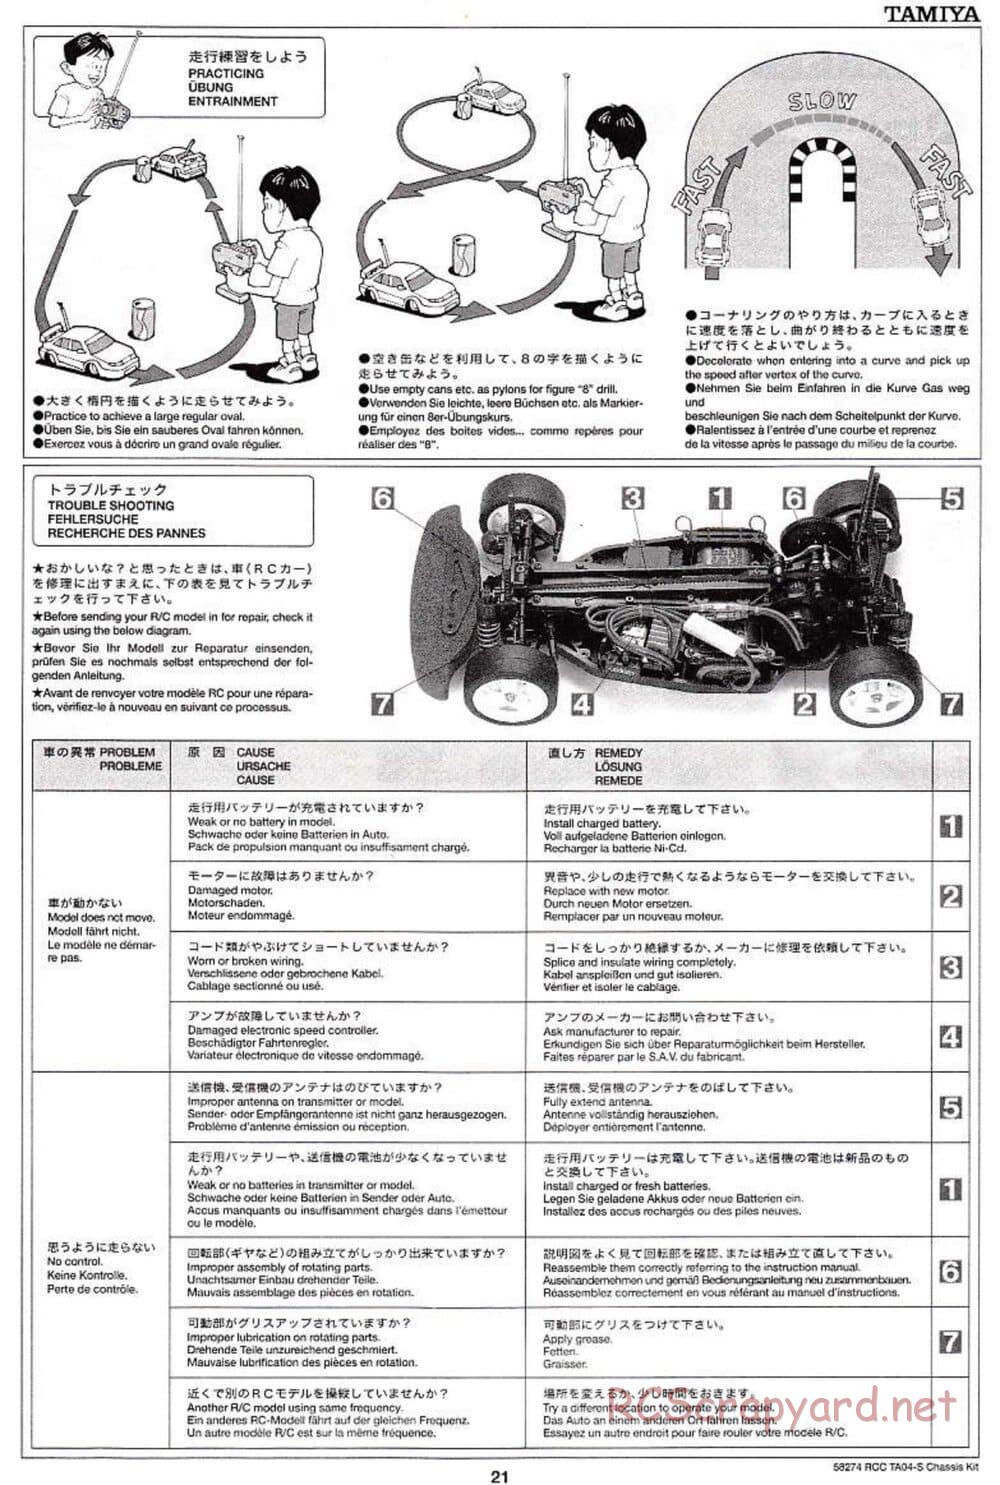 Tamiya - TA-04S Chassis - Manual - Page 21